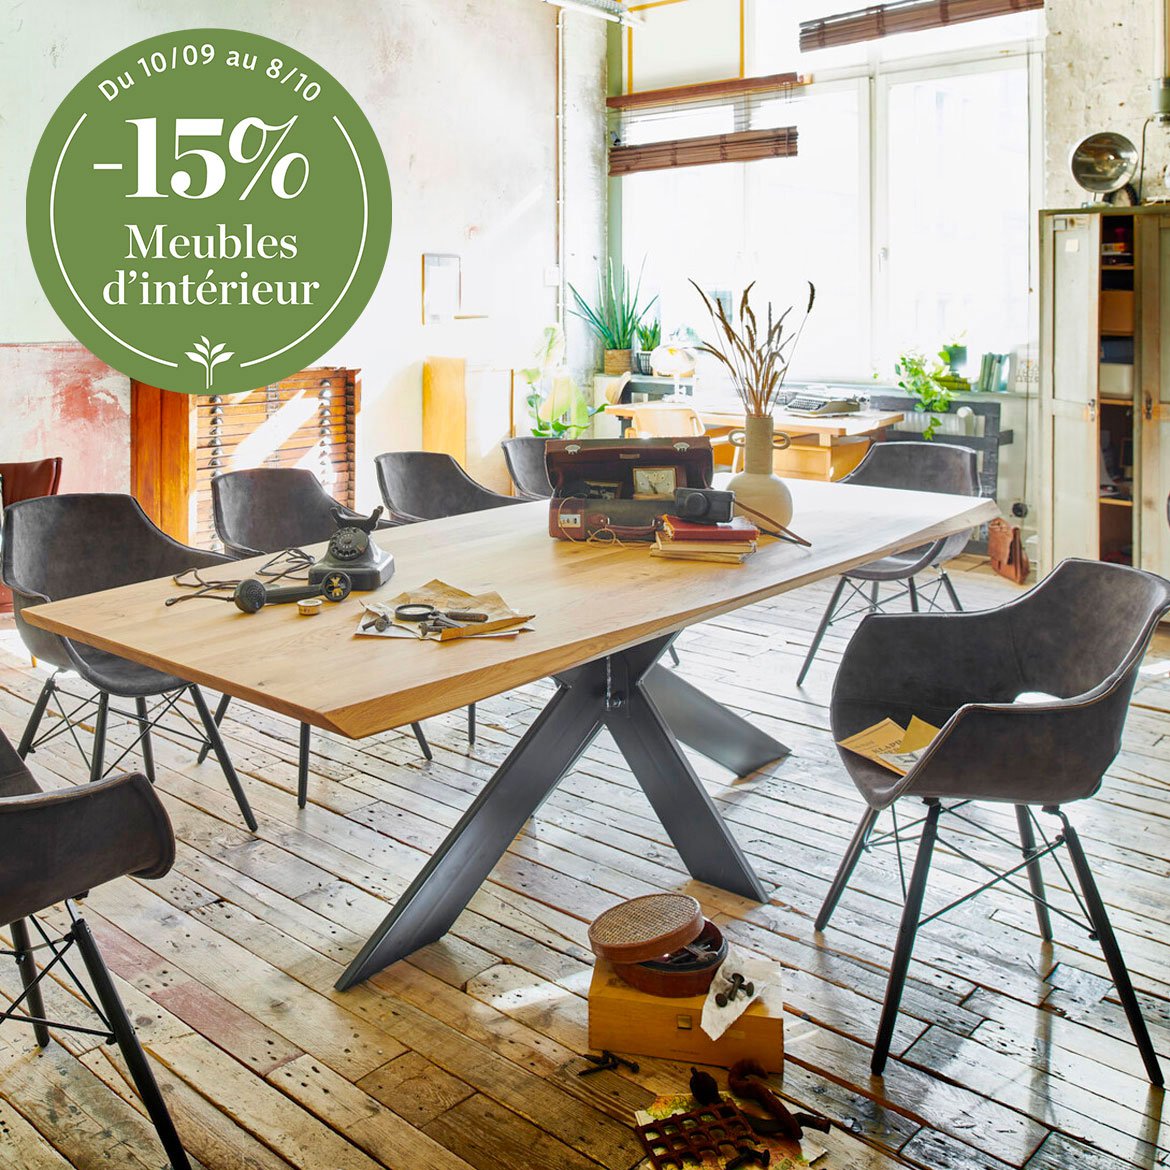 Espace repas - tables en bois, en marbre, matériaux nobles et personnalisables, chaises et fauteuils de repas - Schilliger